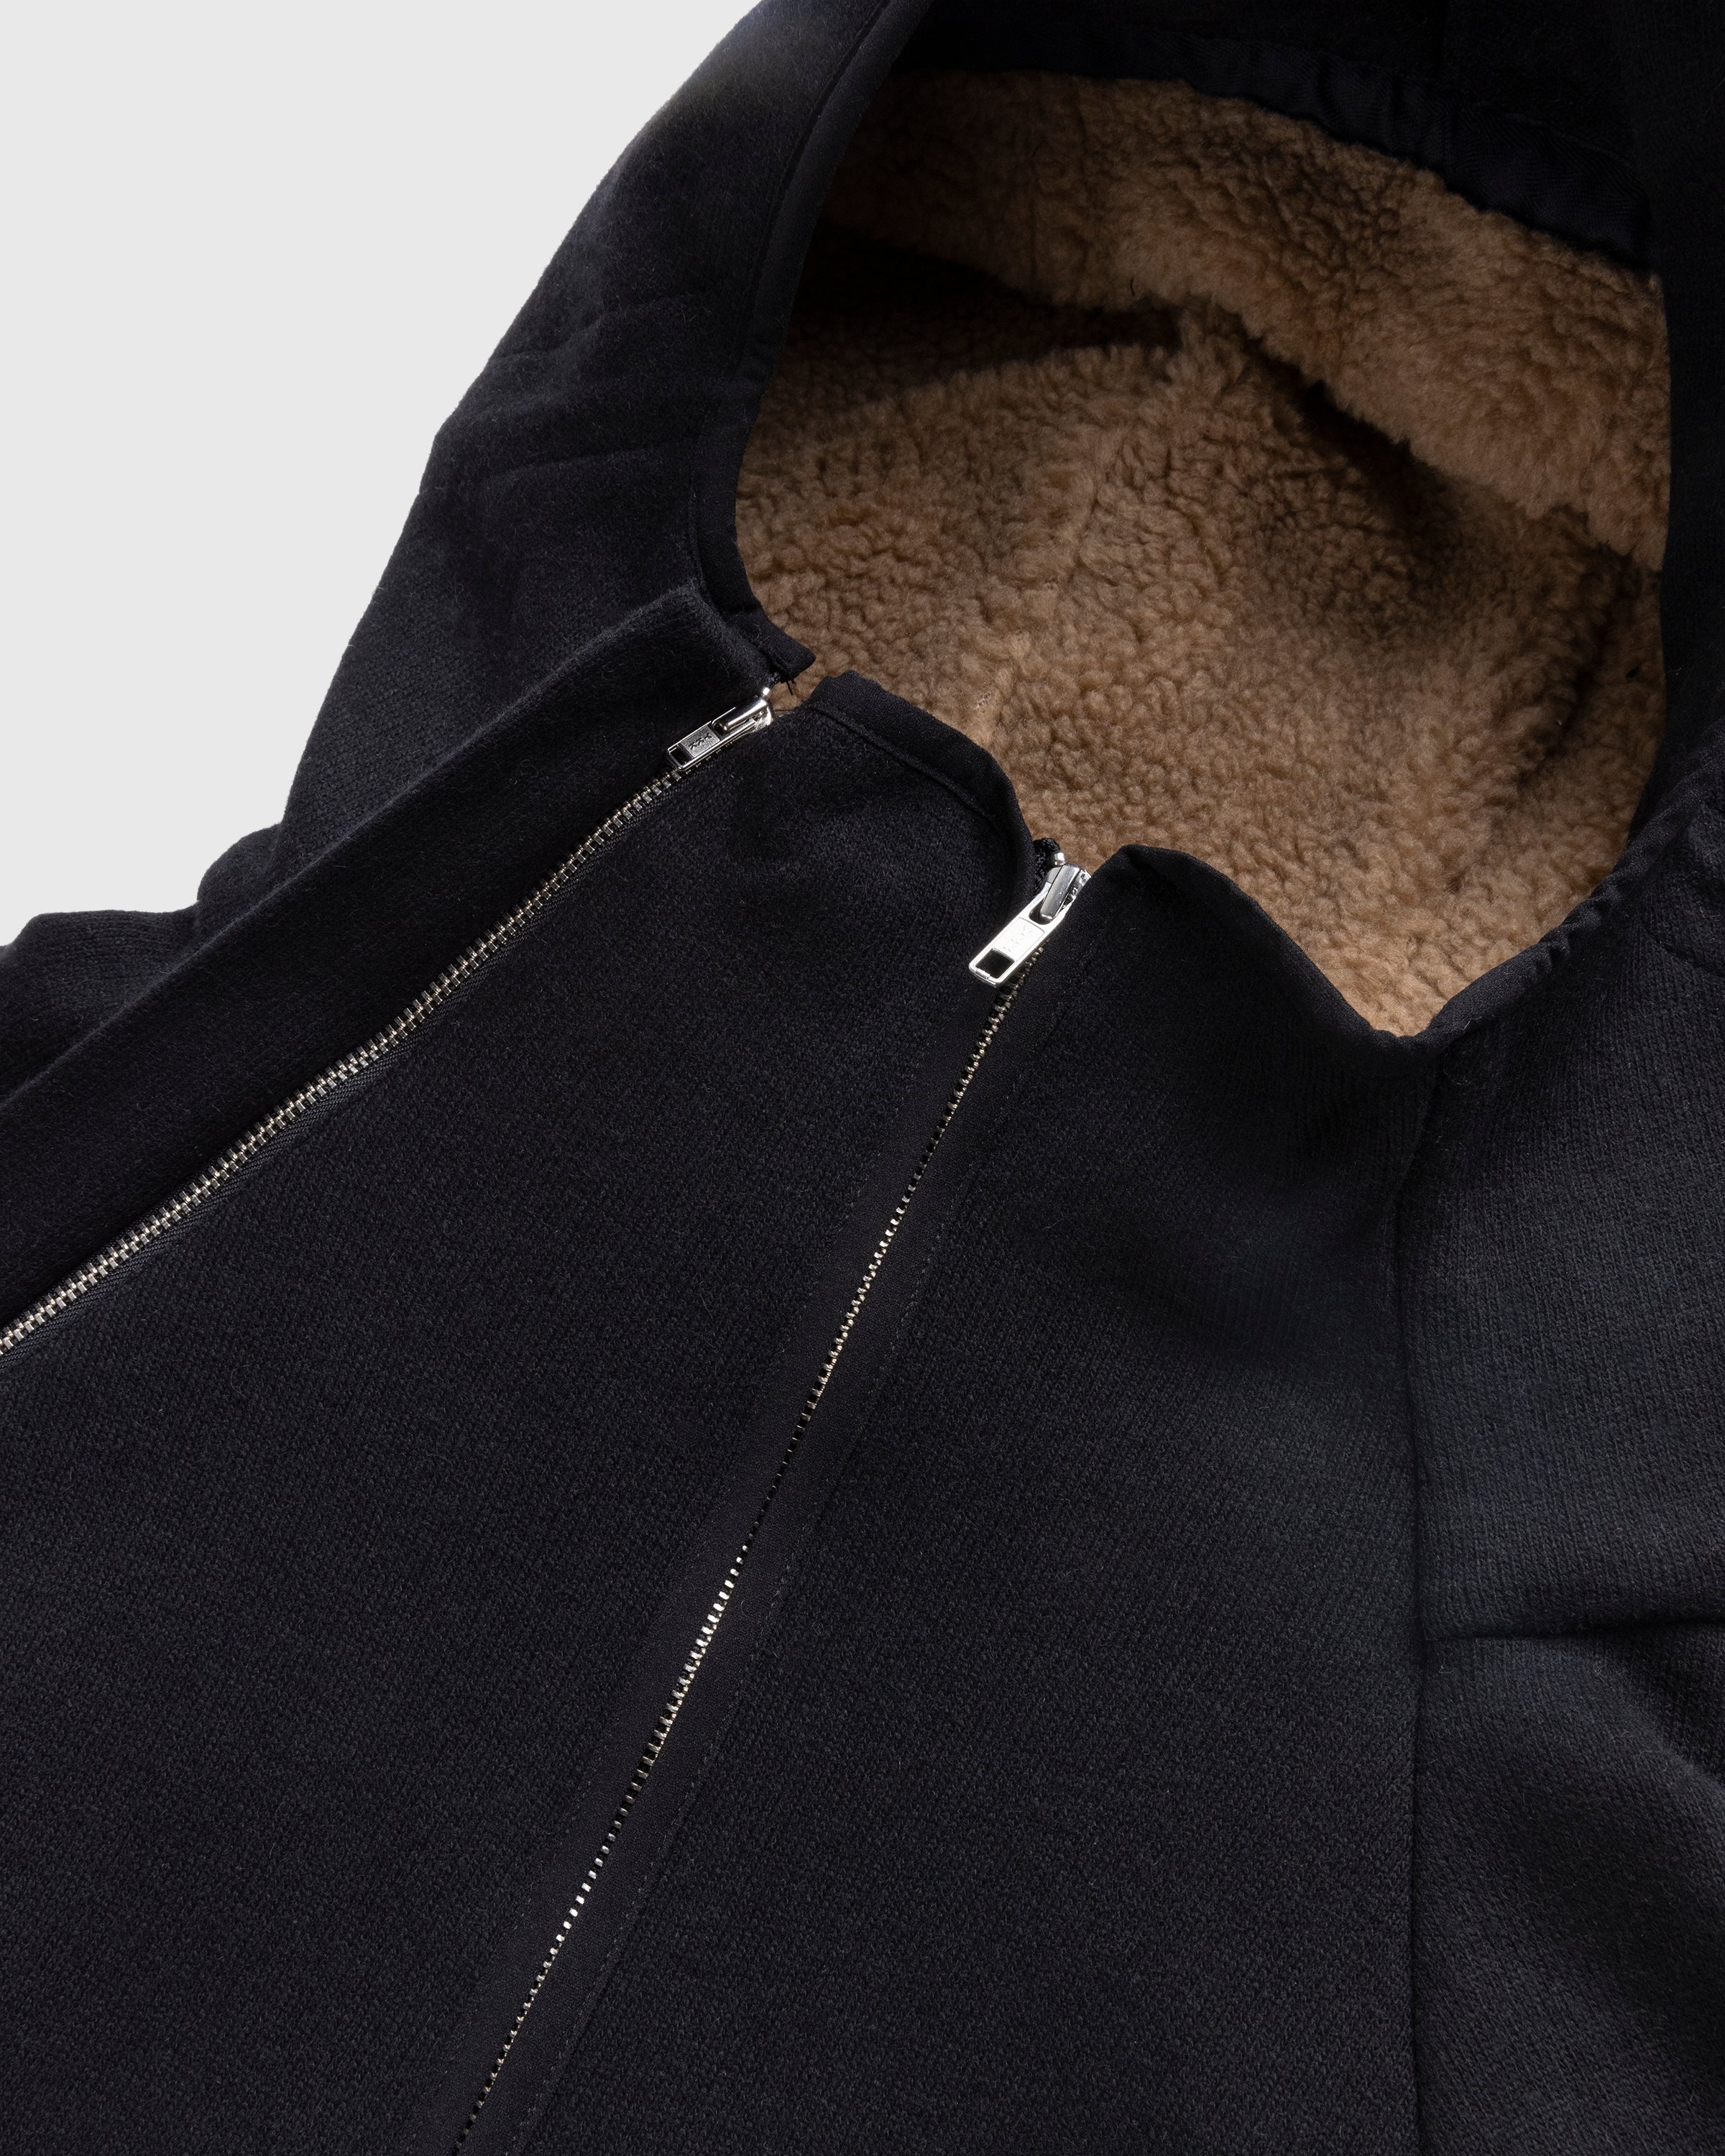 RANRA - Ooal Wool Jacket Black - Clothing - Black - Image 5